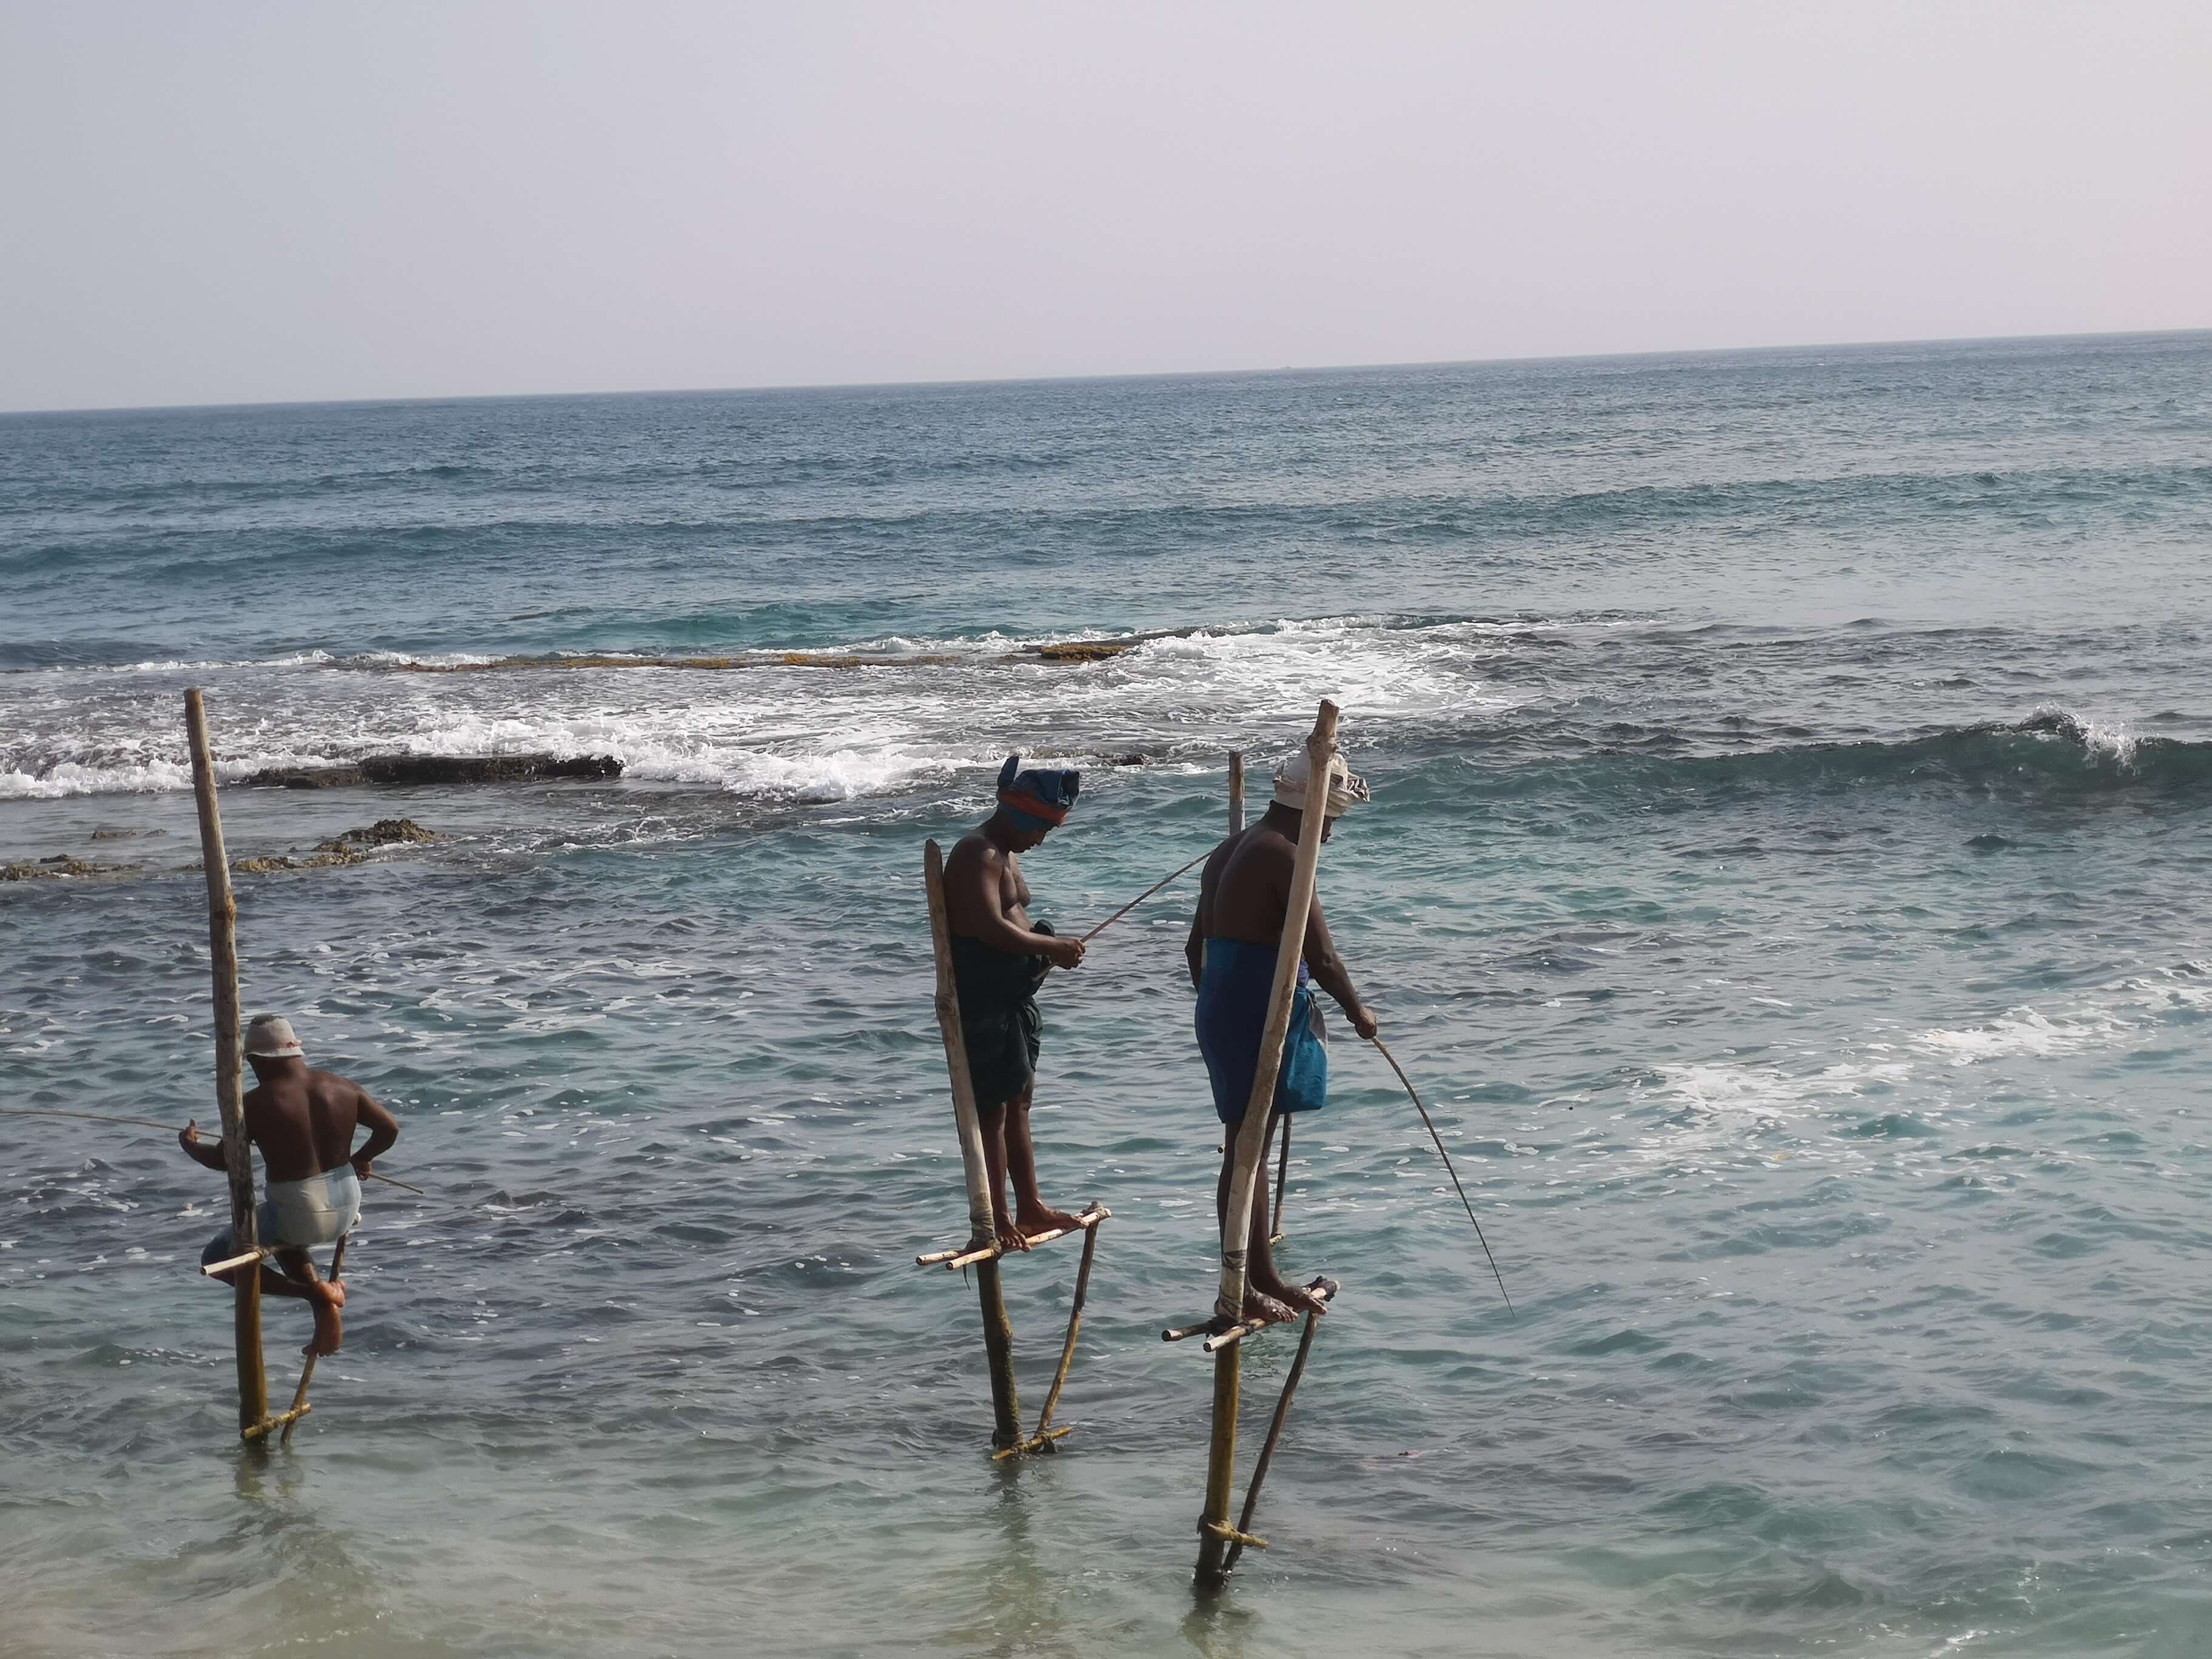 三名渔民以“高跷捕鱼”的传统捕鱼方式捕鱼的看法